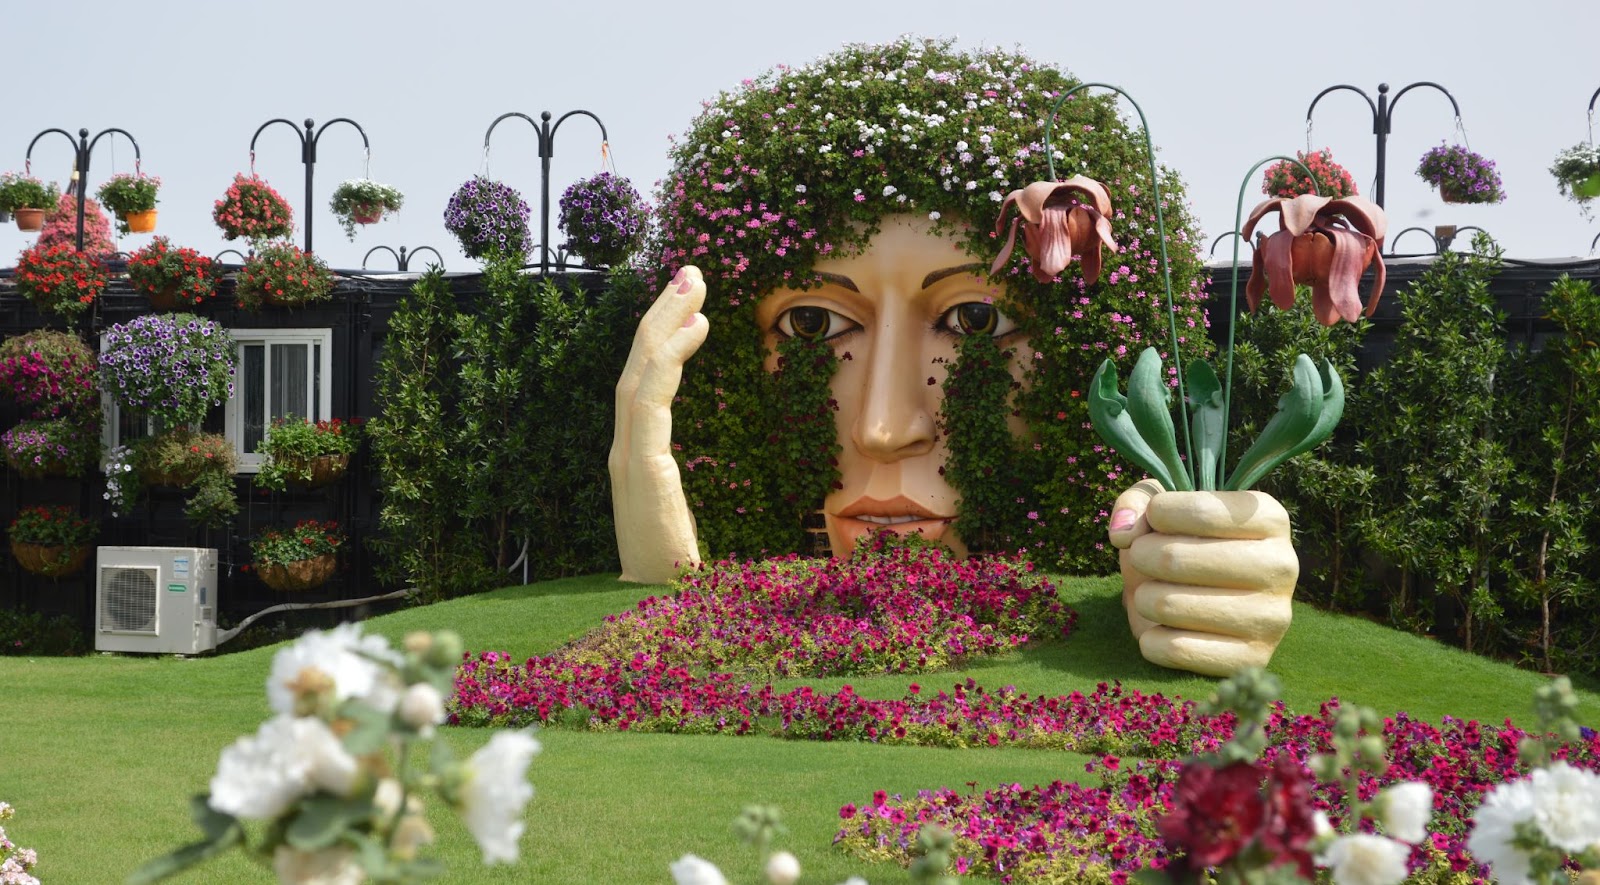 World's largest flower garden